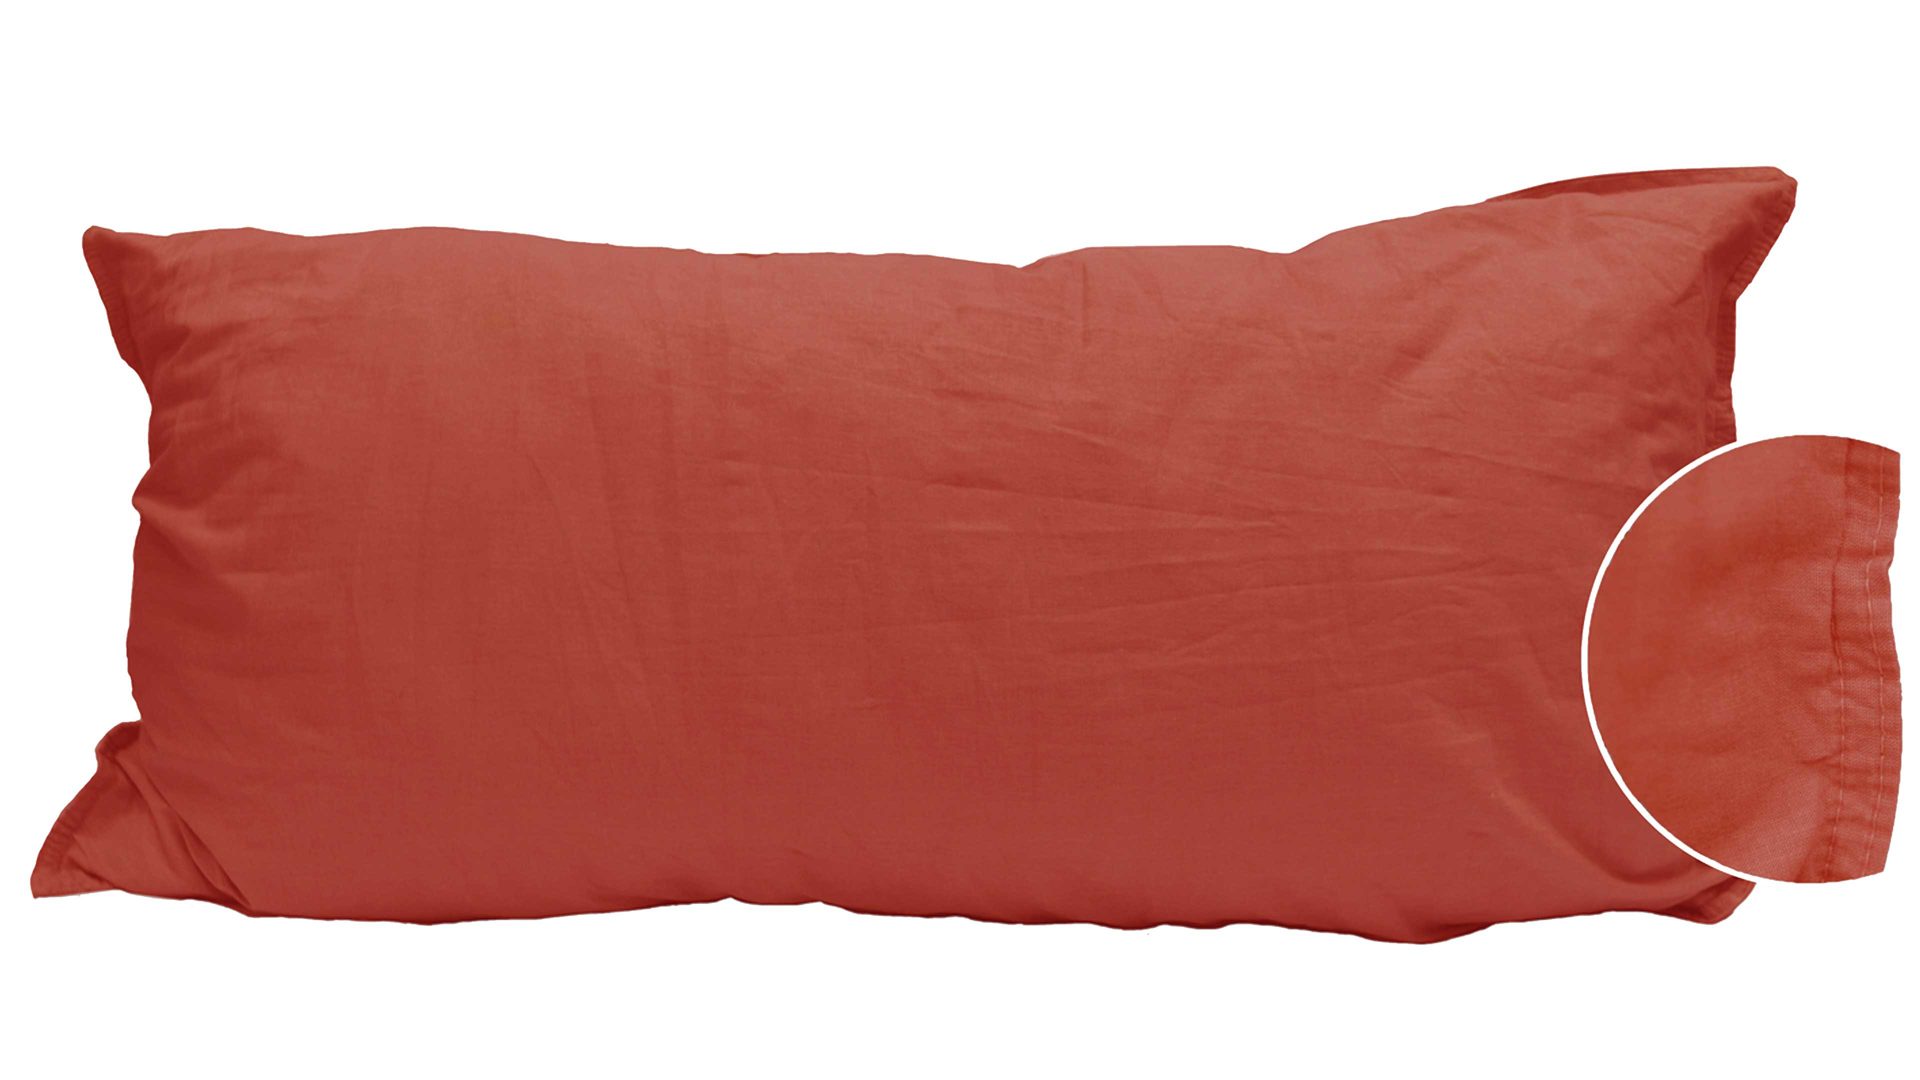 Kissenbezug /-hülle H.g. hahn haustextilien aus Stoff in Orange HAHN Kissenbezug Stone Washed sienafarbene Baumwolle – ca. 40 x 80 cm